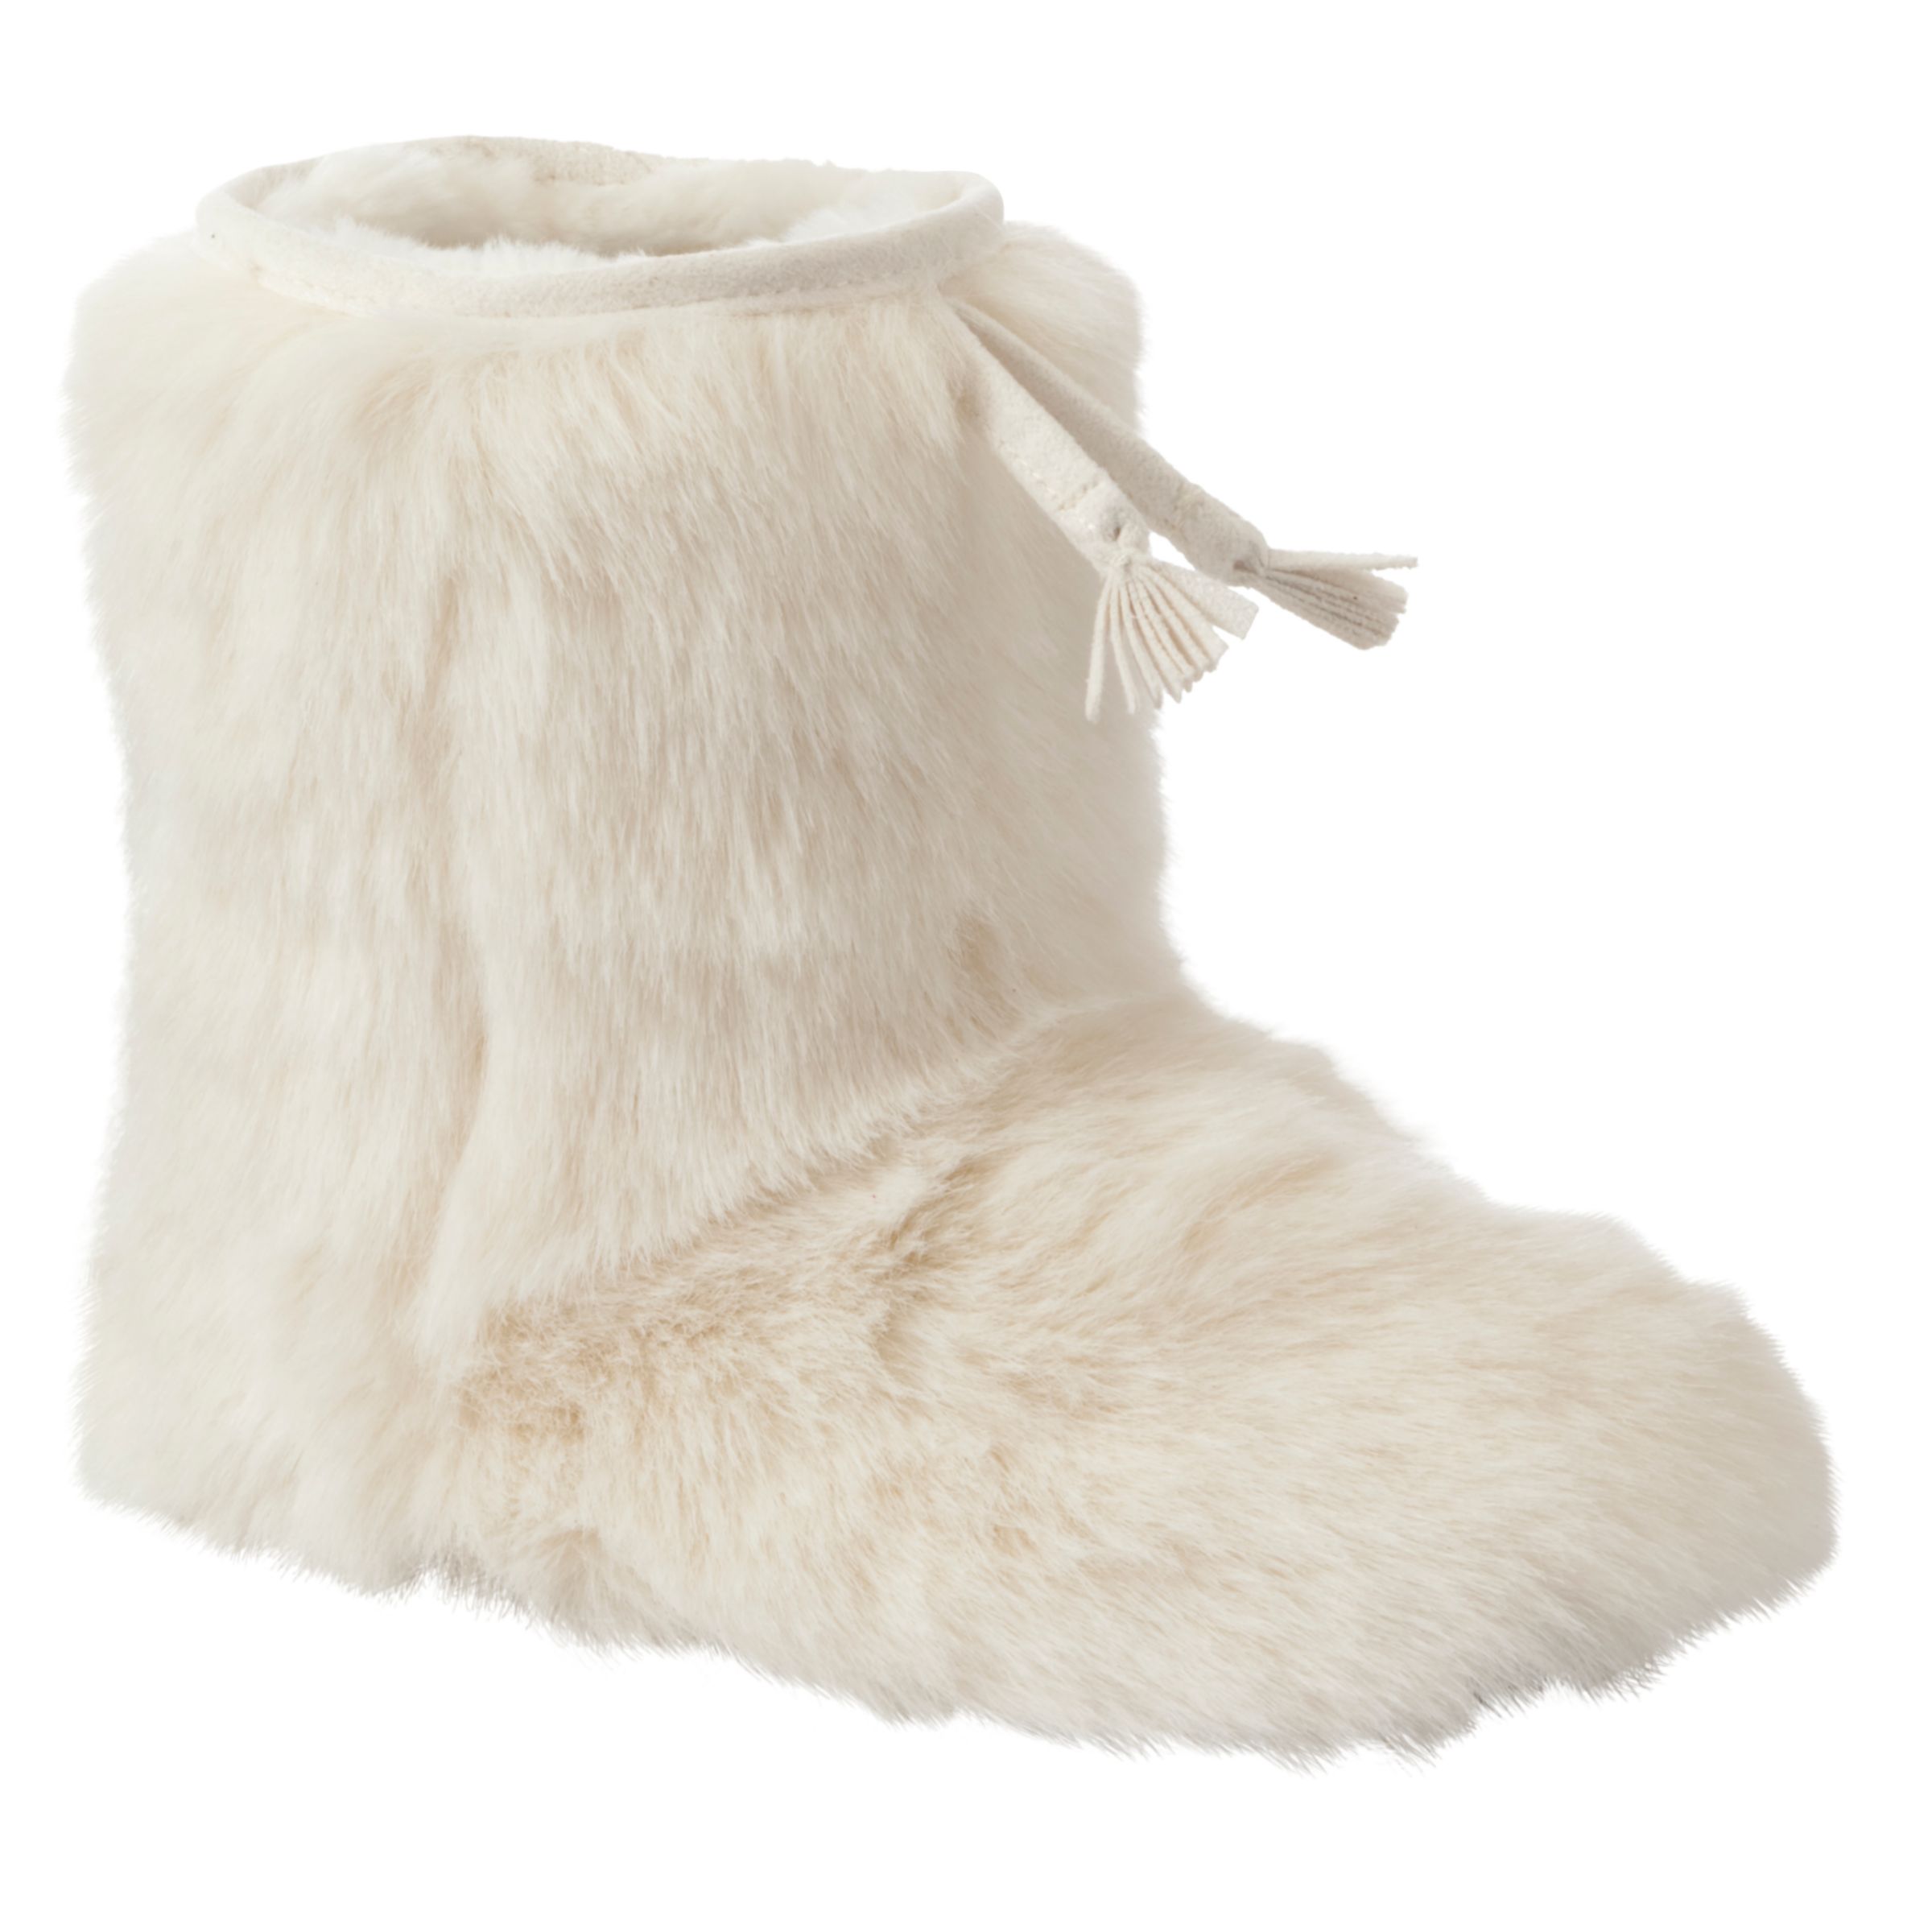 furry slipper boots uk